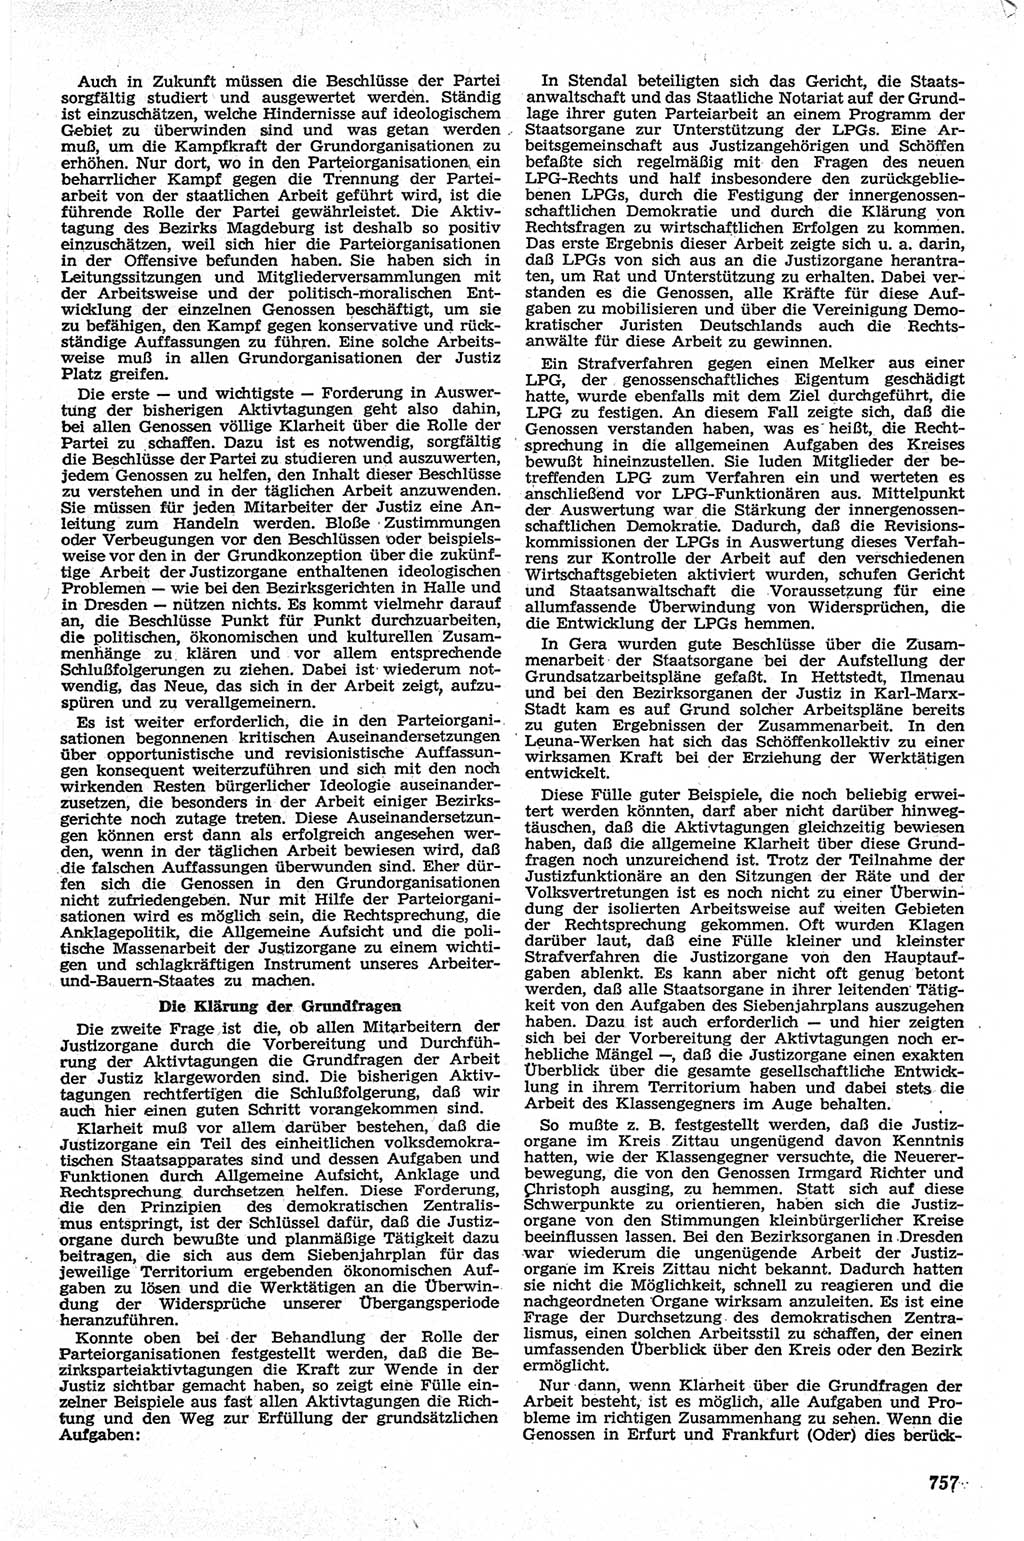 Neue Justiz (NJ), Zeitschrift für Recht und Rechtswissenschaft [Deutsche Demokratische Republik (DDR)], 13. Jahrgang 1959, Seite 757 (NJ DDR 1959, S. 757)